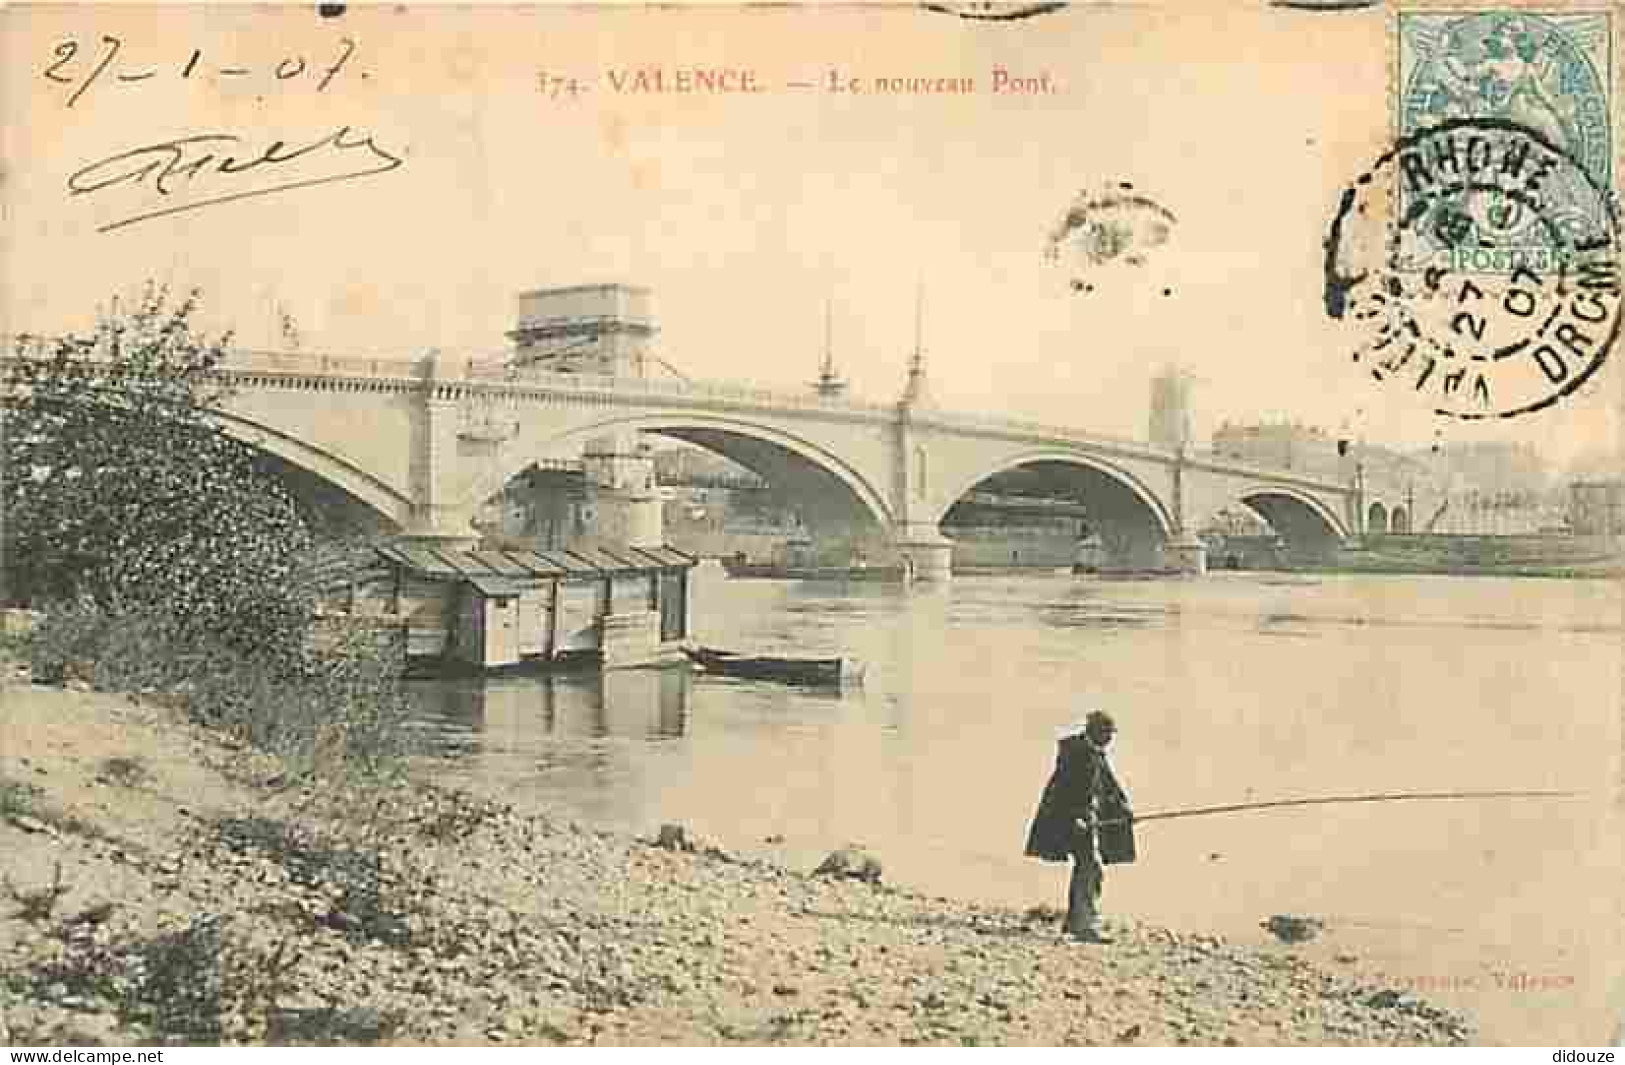 26 - Valence - Le Nouveau Pont - Animée - Pecheur à La Ligne - Oblitération Ronde De 1907 - Etat Léger Pli Visible - CPA - Valence